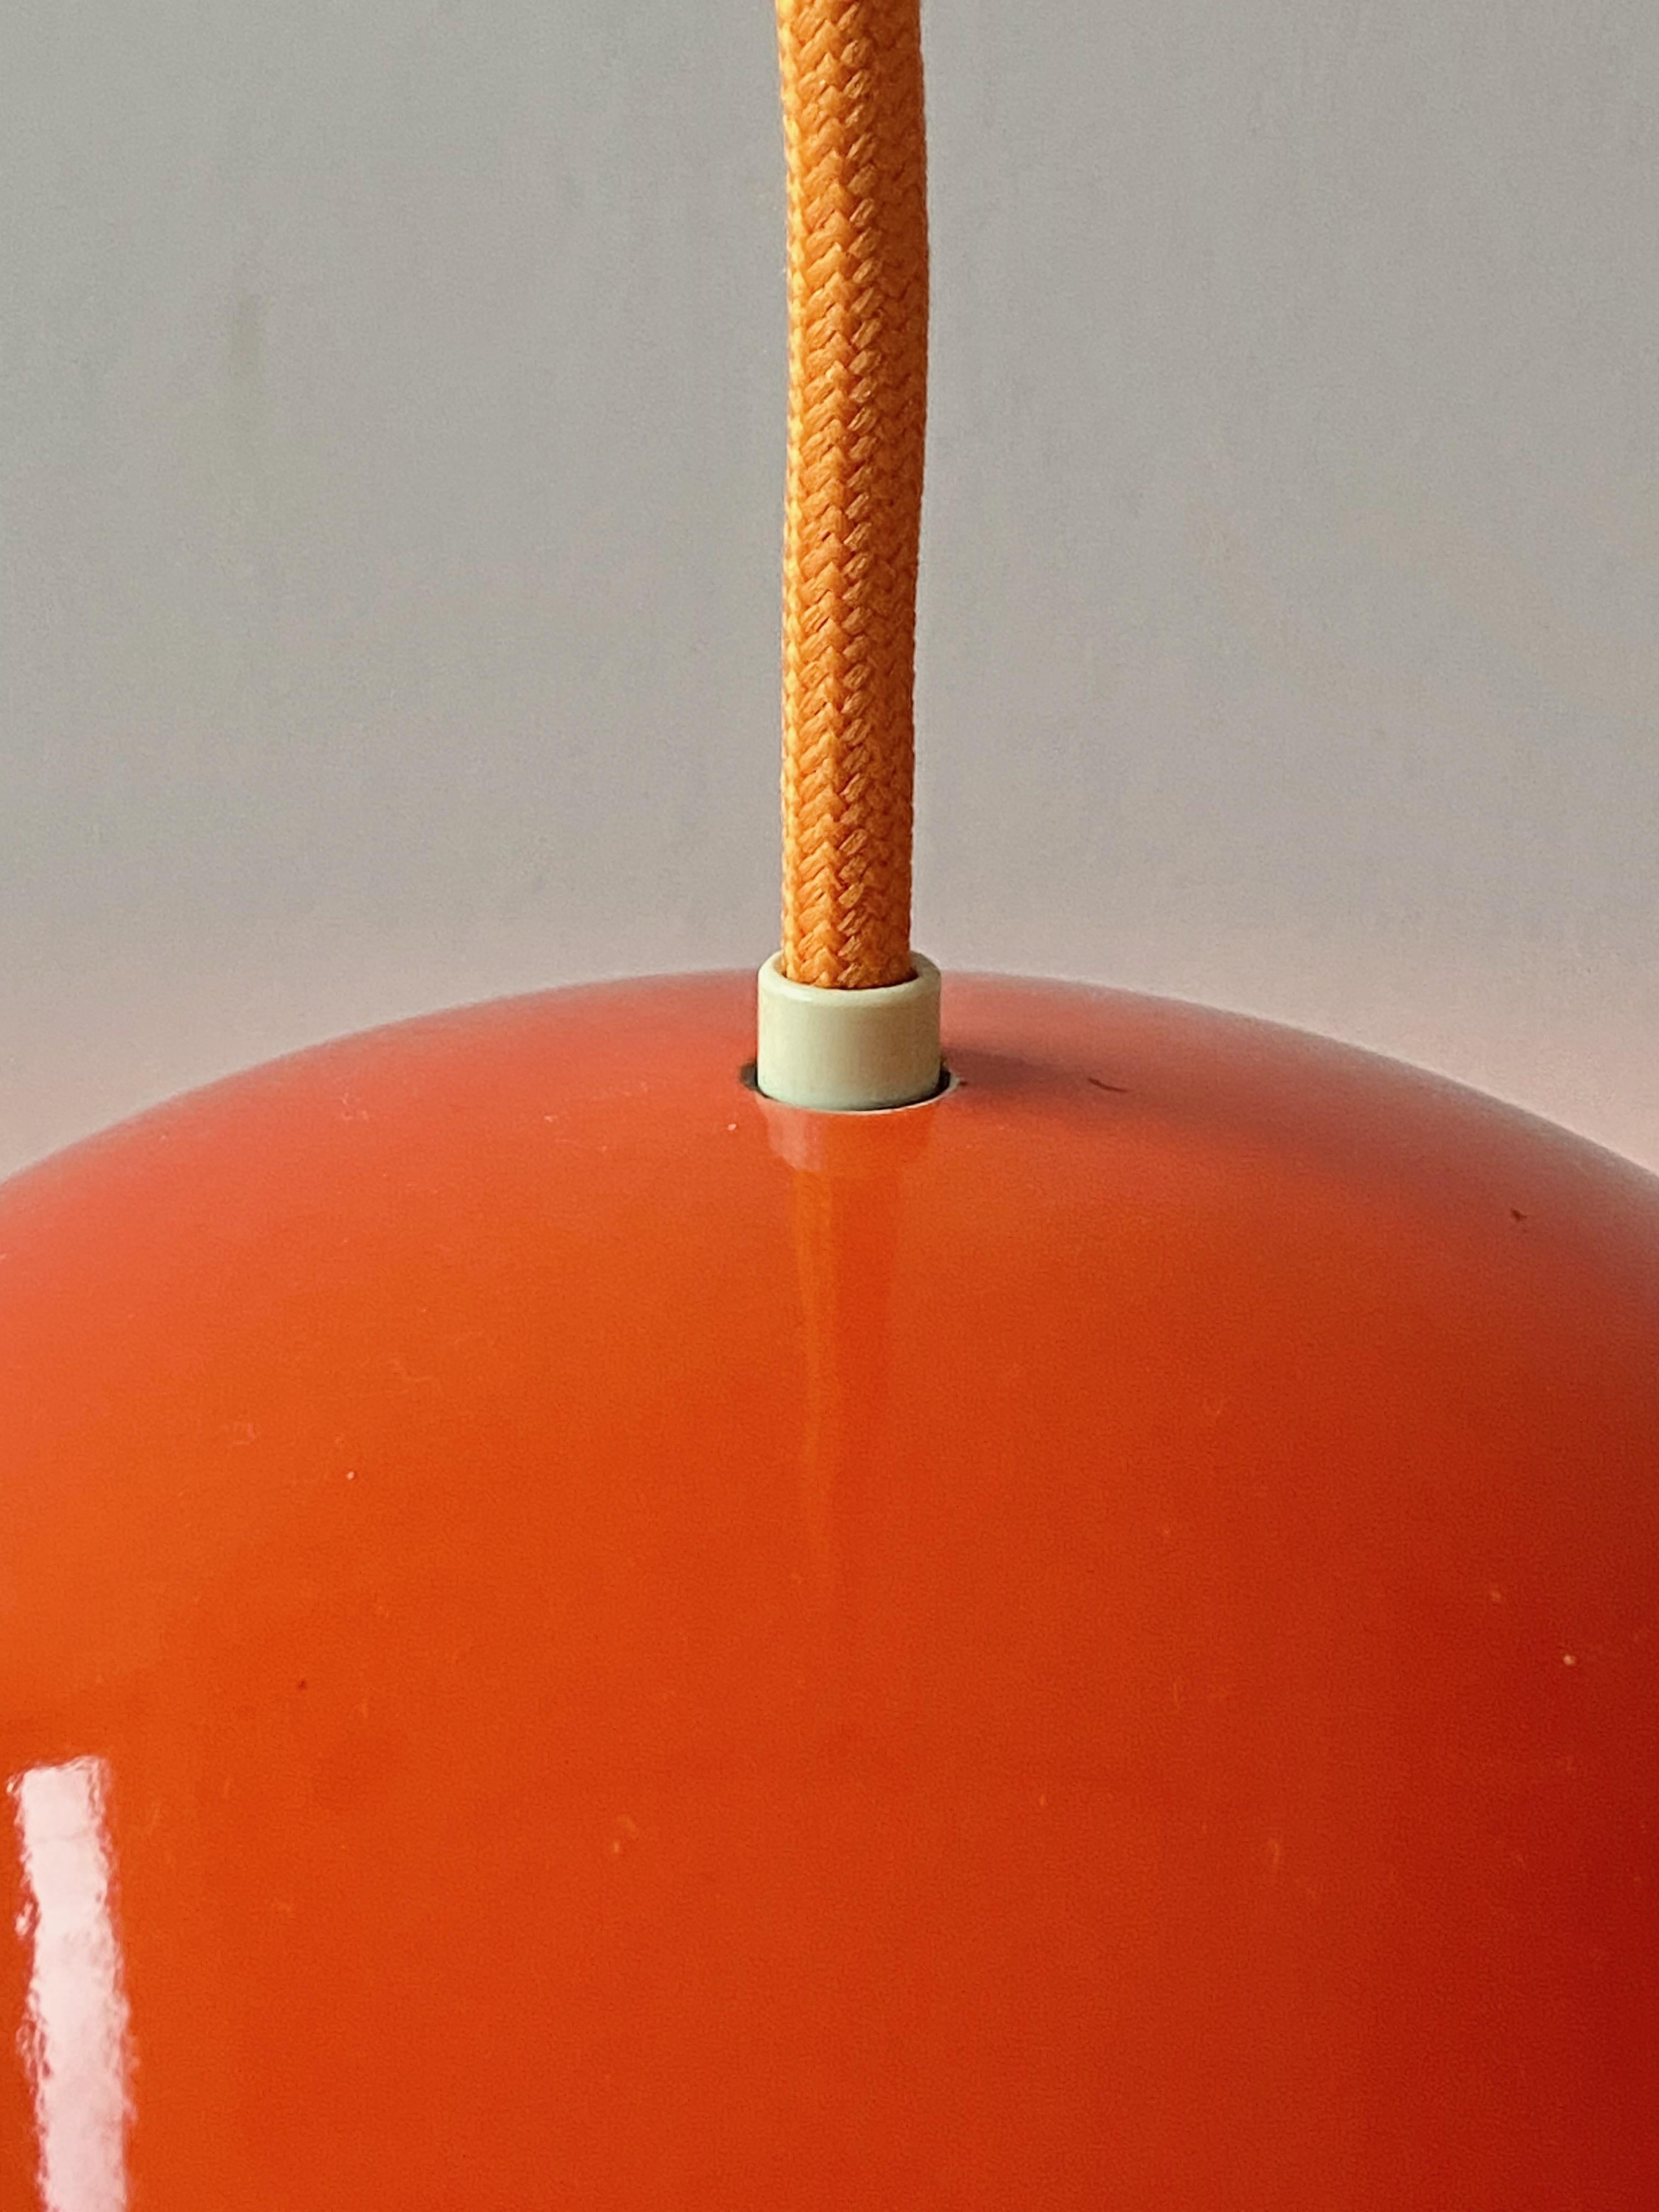 Schöne rote Emaille Blumentopf Pendelleuchte Design Verner Panton im Jahr 1968 von Louis Poulsen produziert, Made in Denmark. In emailliertem Metall nicht mehr in Produktion. Die Lampe ist in gutem Zustand. Keine Teile fehlen, mit neuen